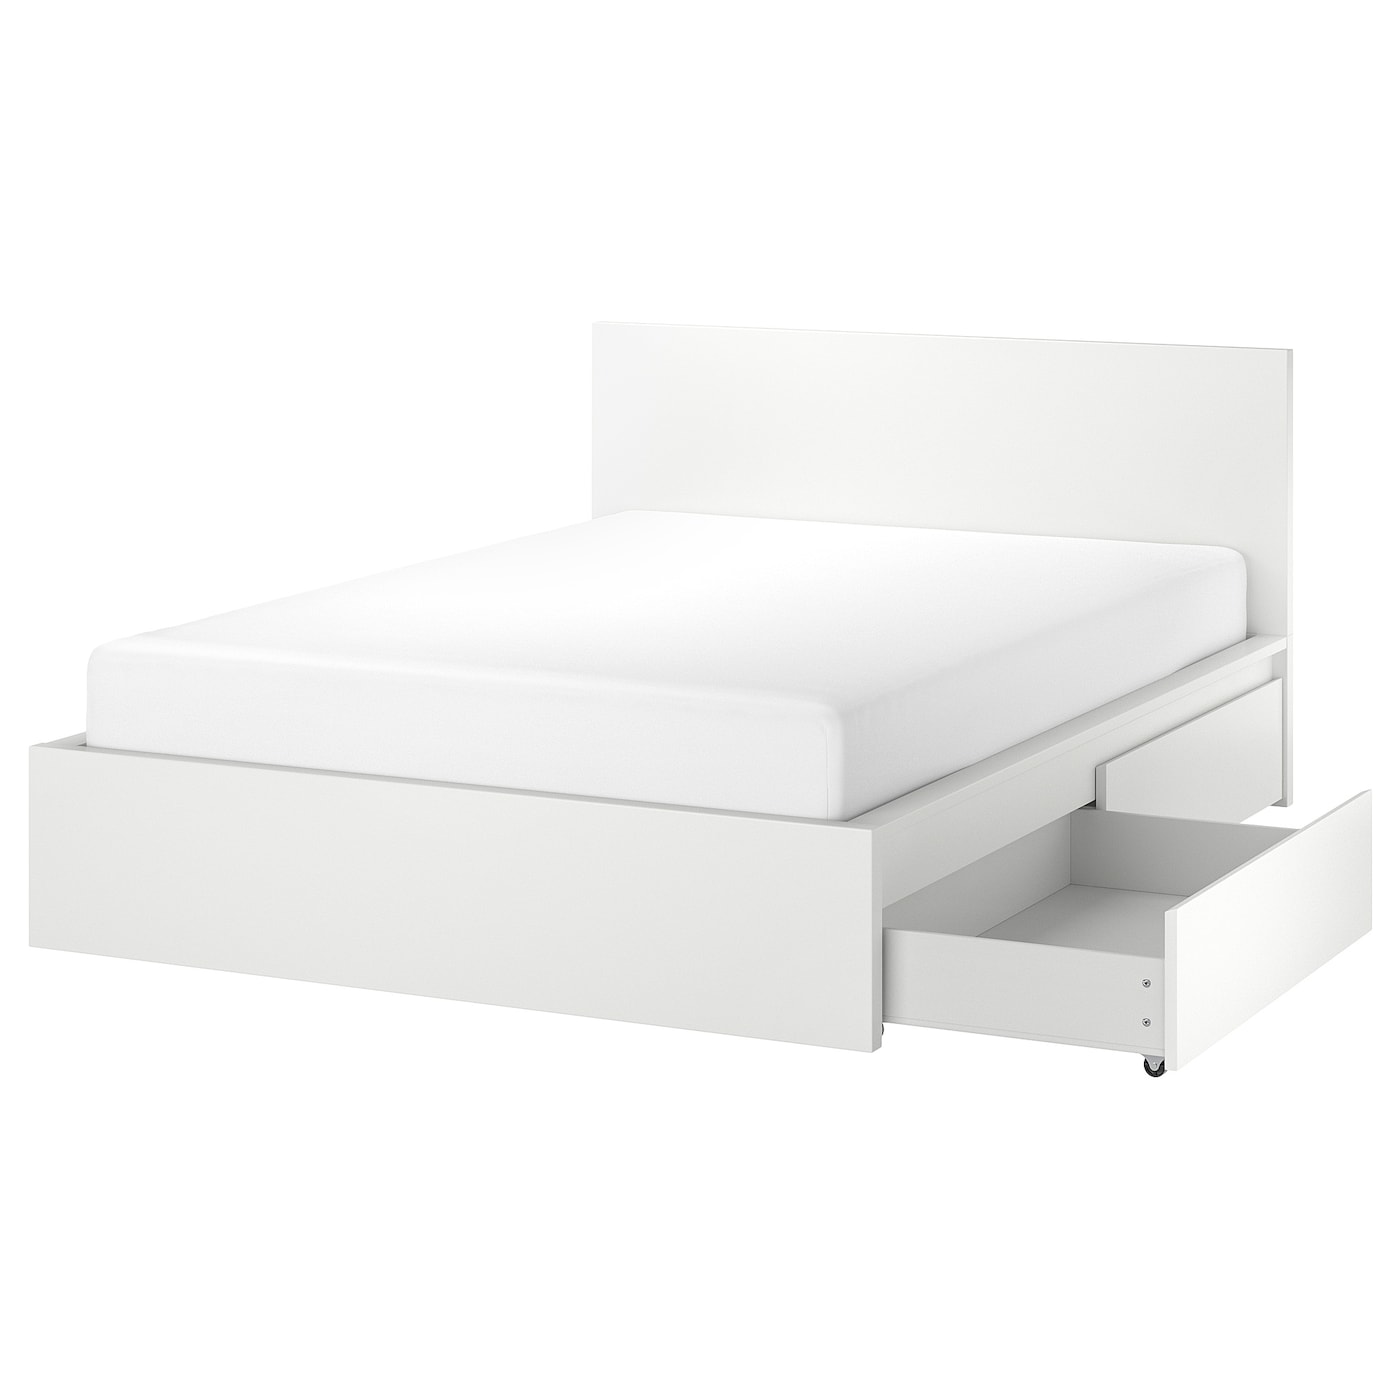 Каркас кровати с 4 ящиками для хранения - IKEA MALM, 200х160 см, белый, МАЛЬМ ИКЕА